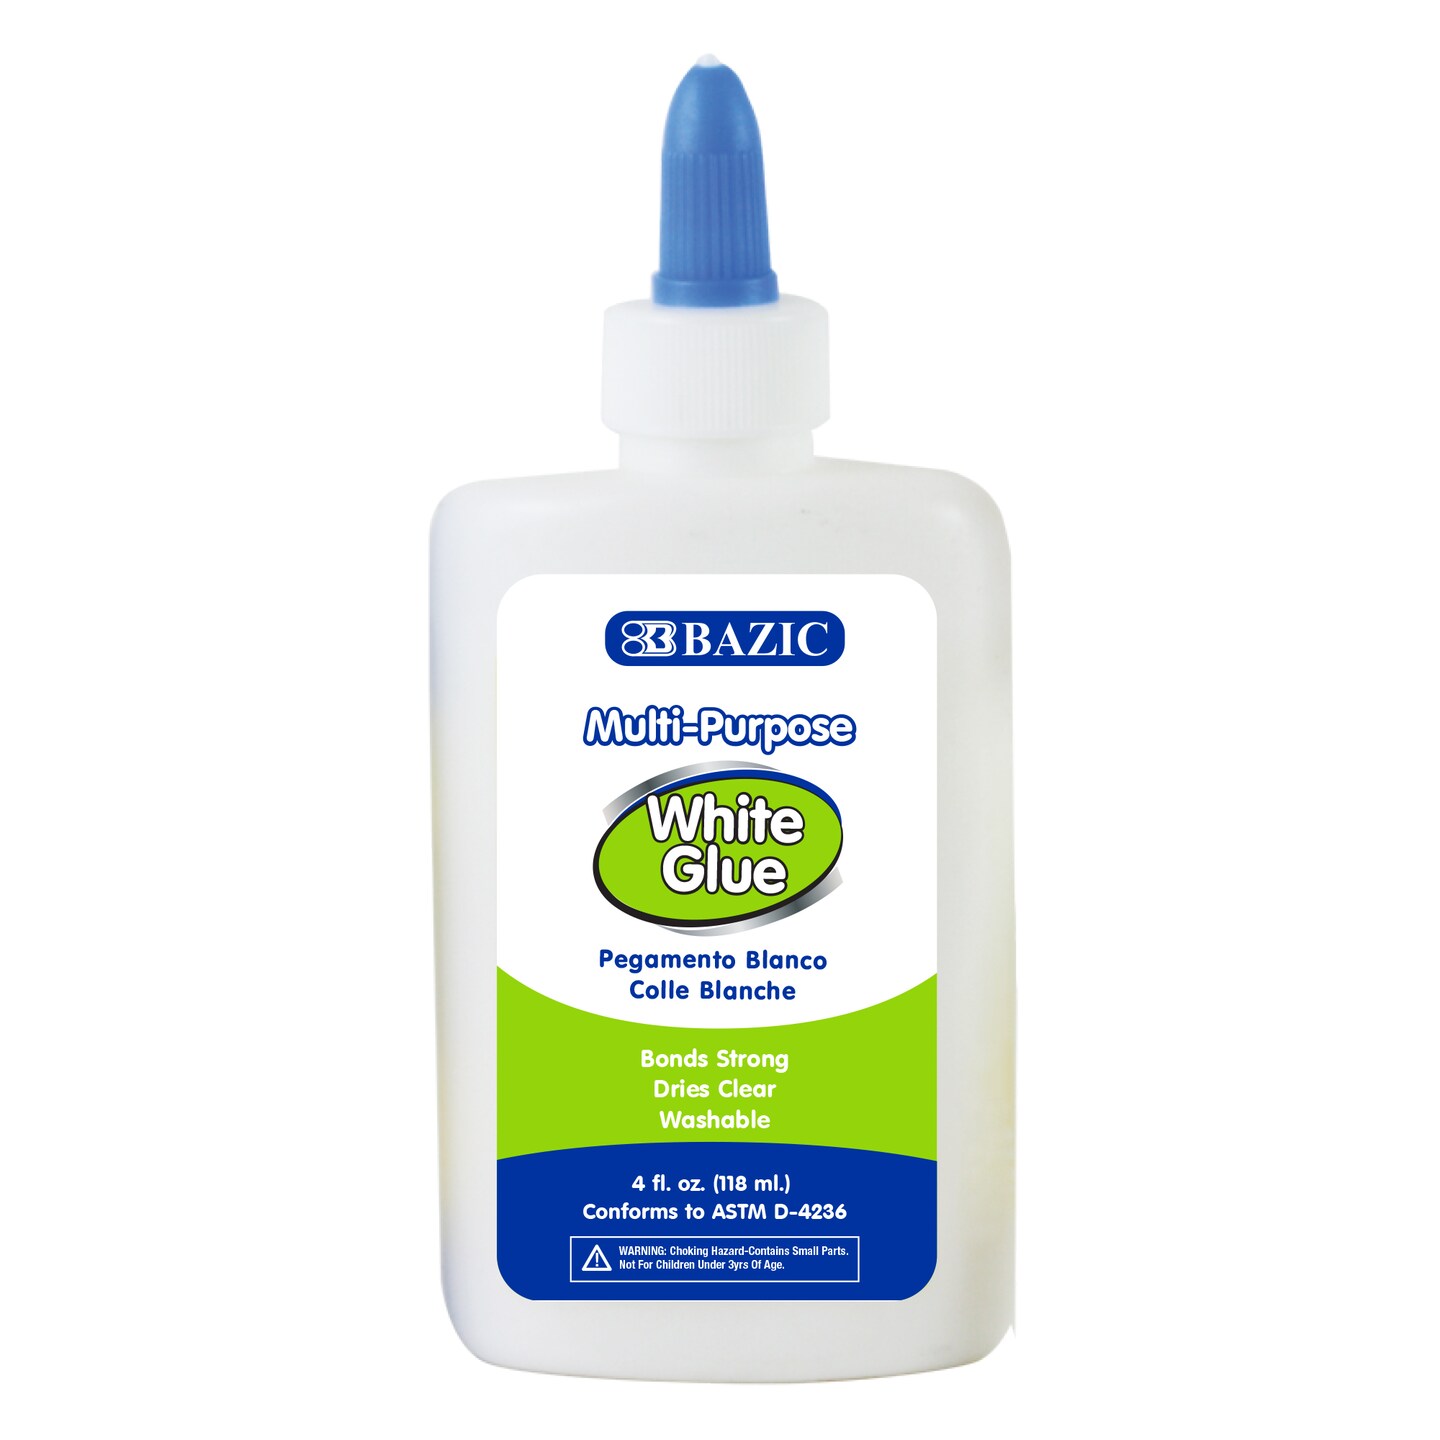 BAZIC White Glue 4 FL OZ (118 mL)